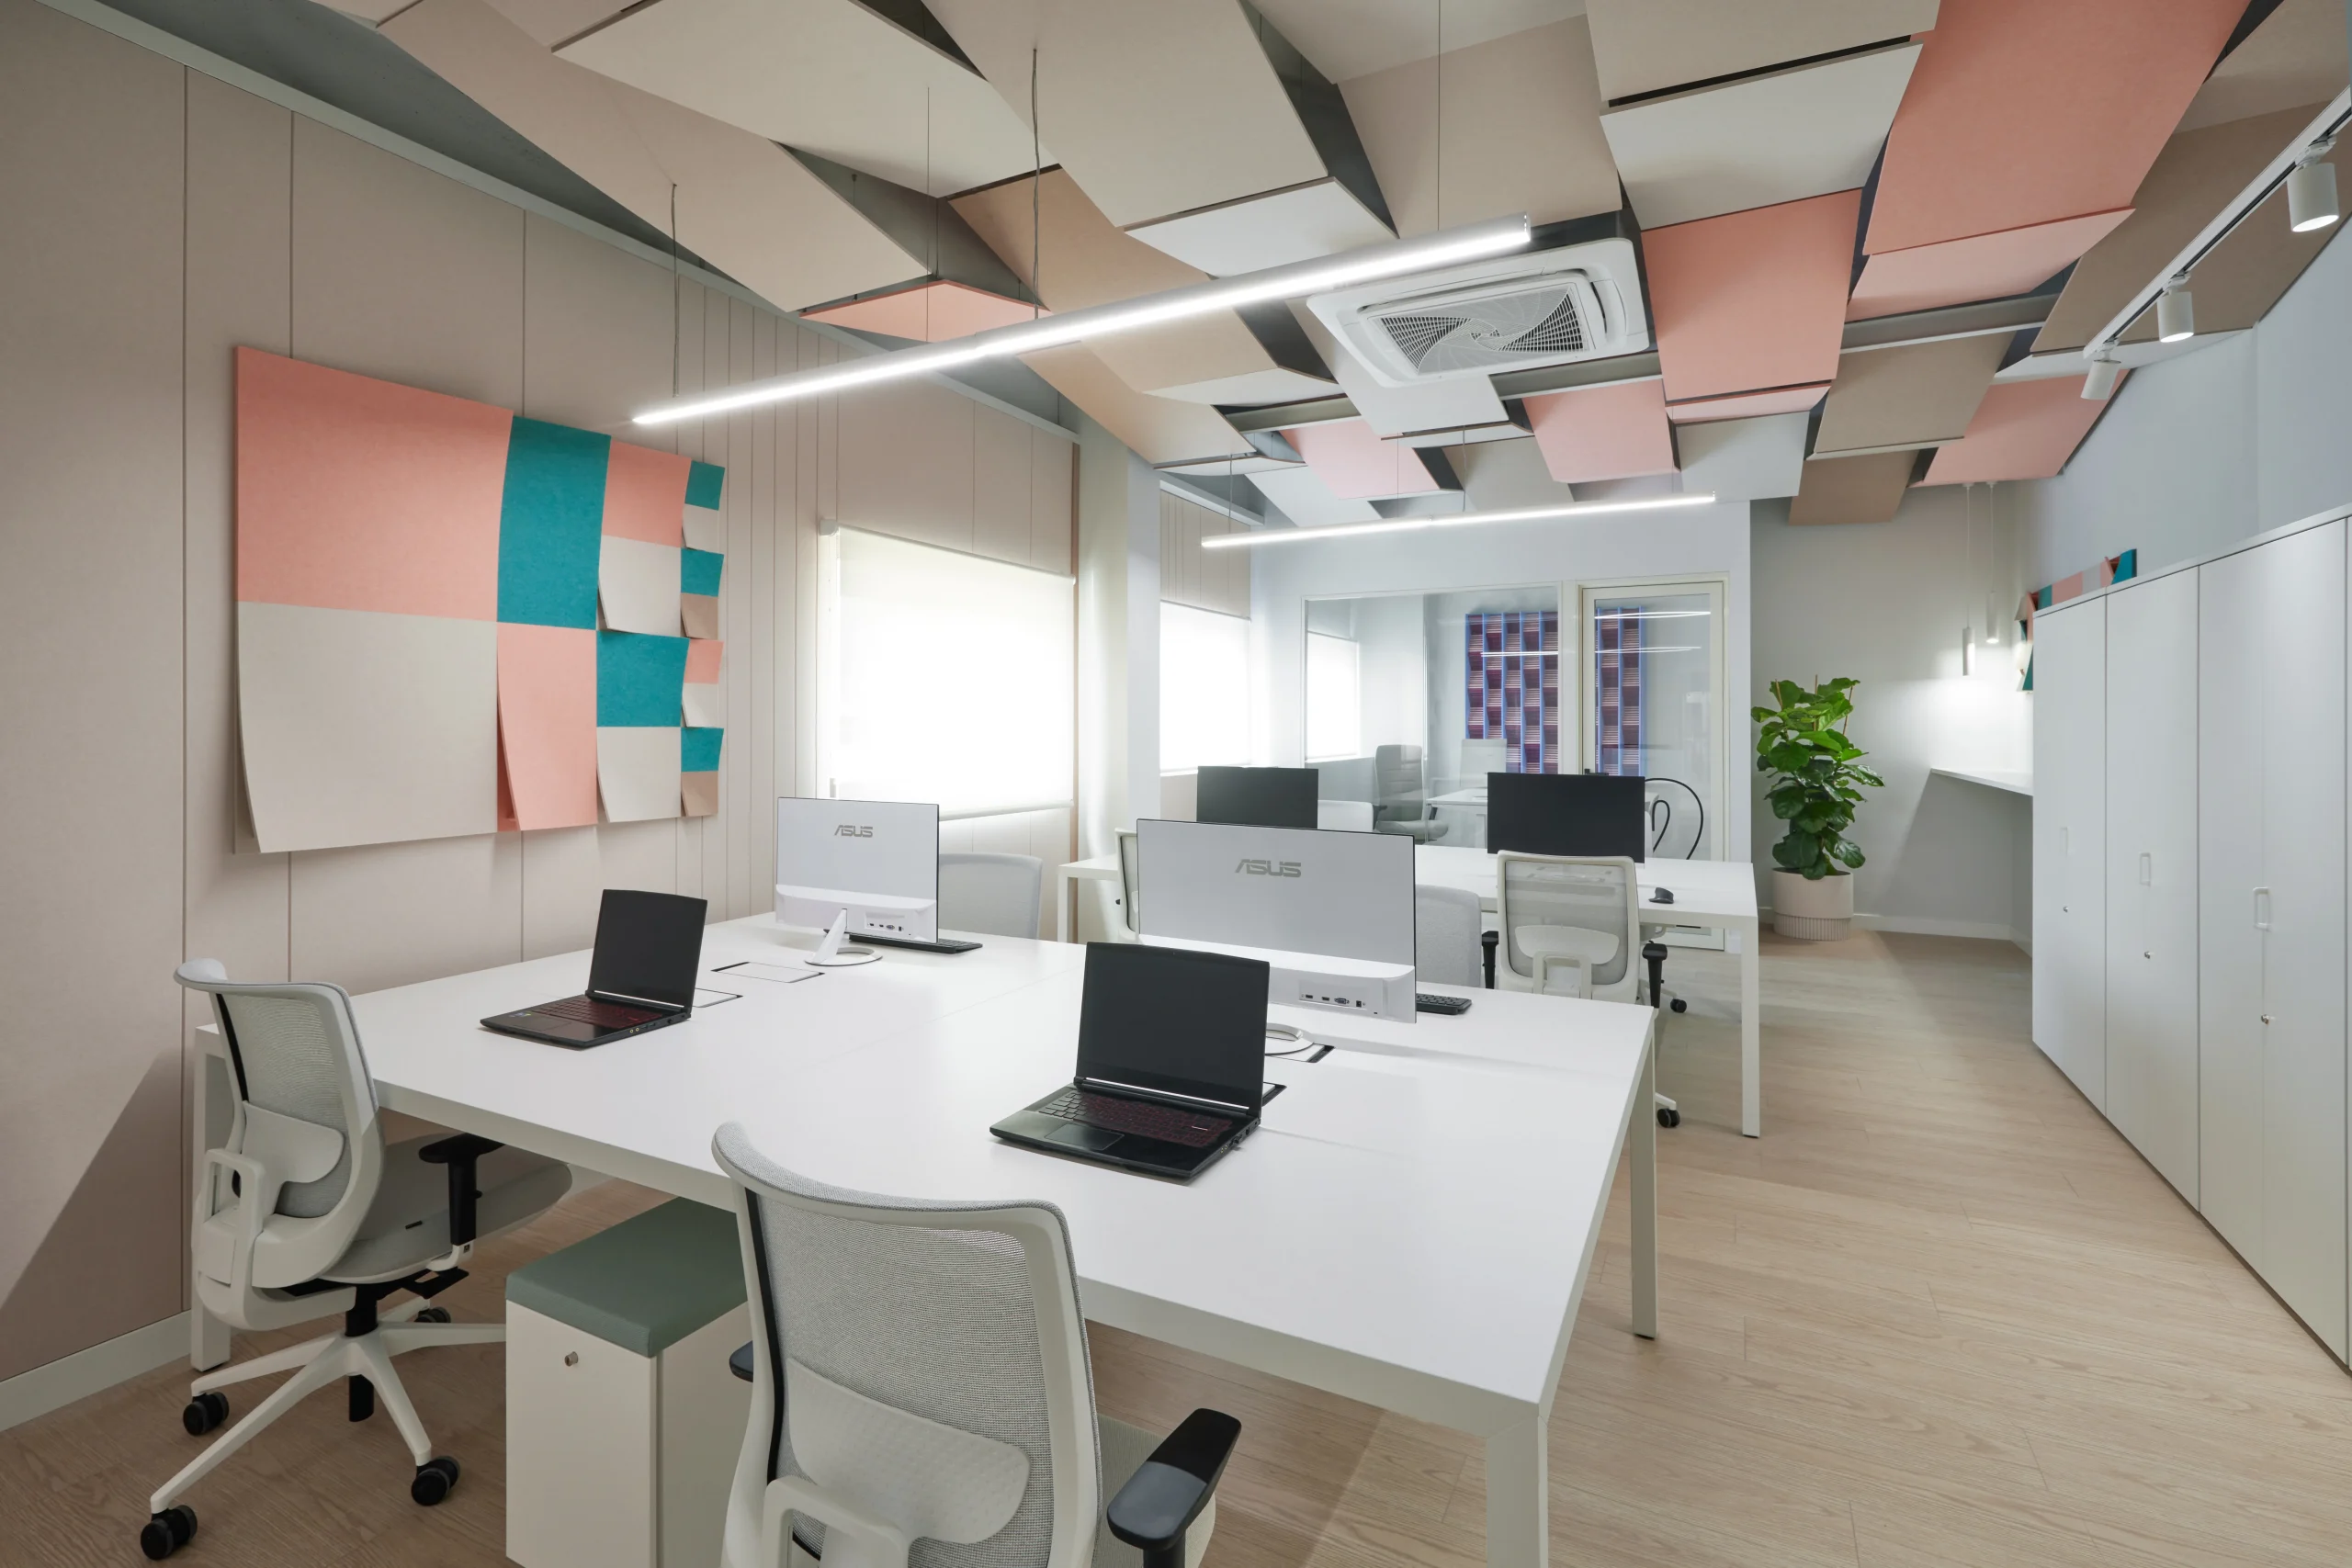 soluciones acústicas para oficinas - techos acústicos